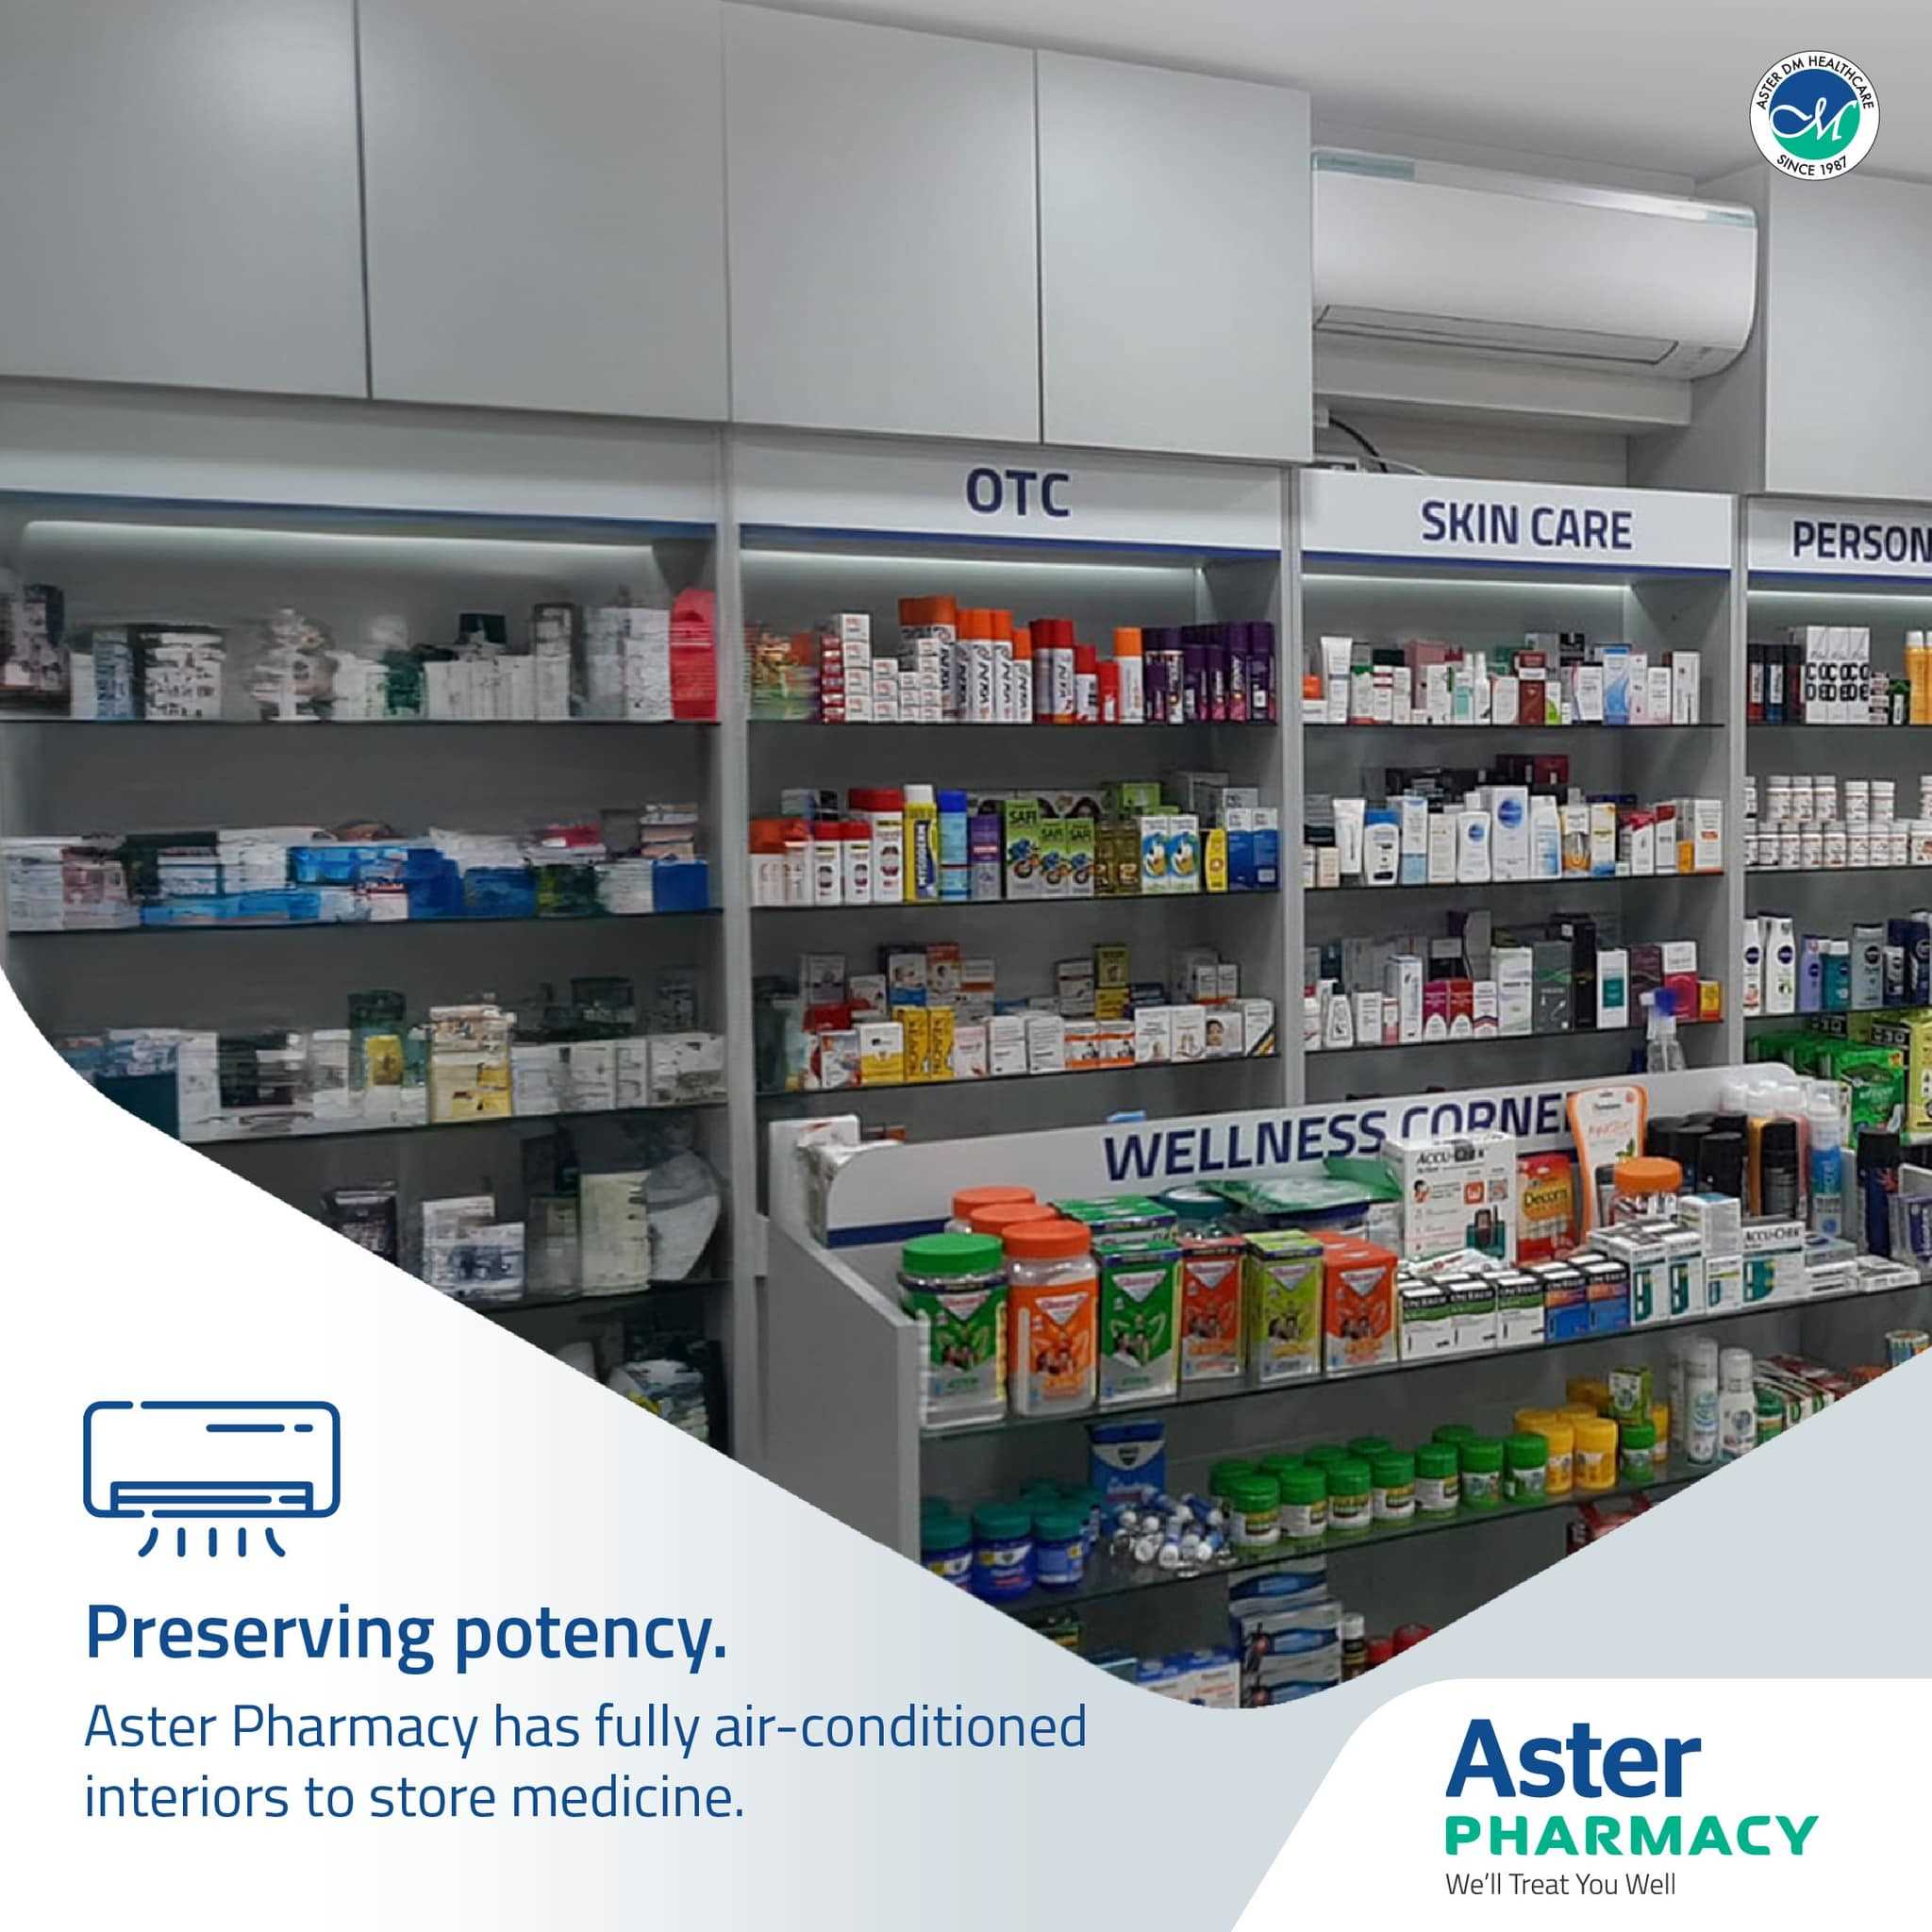 Aster Pharmacy in Elamakkara, Ernakulam